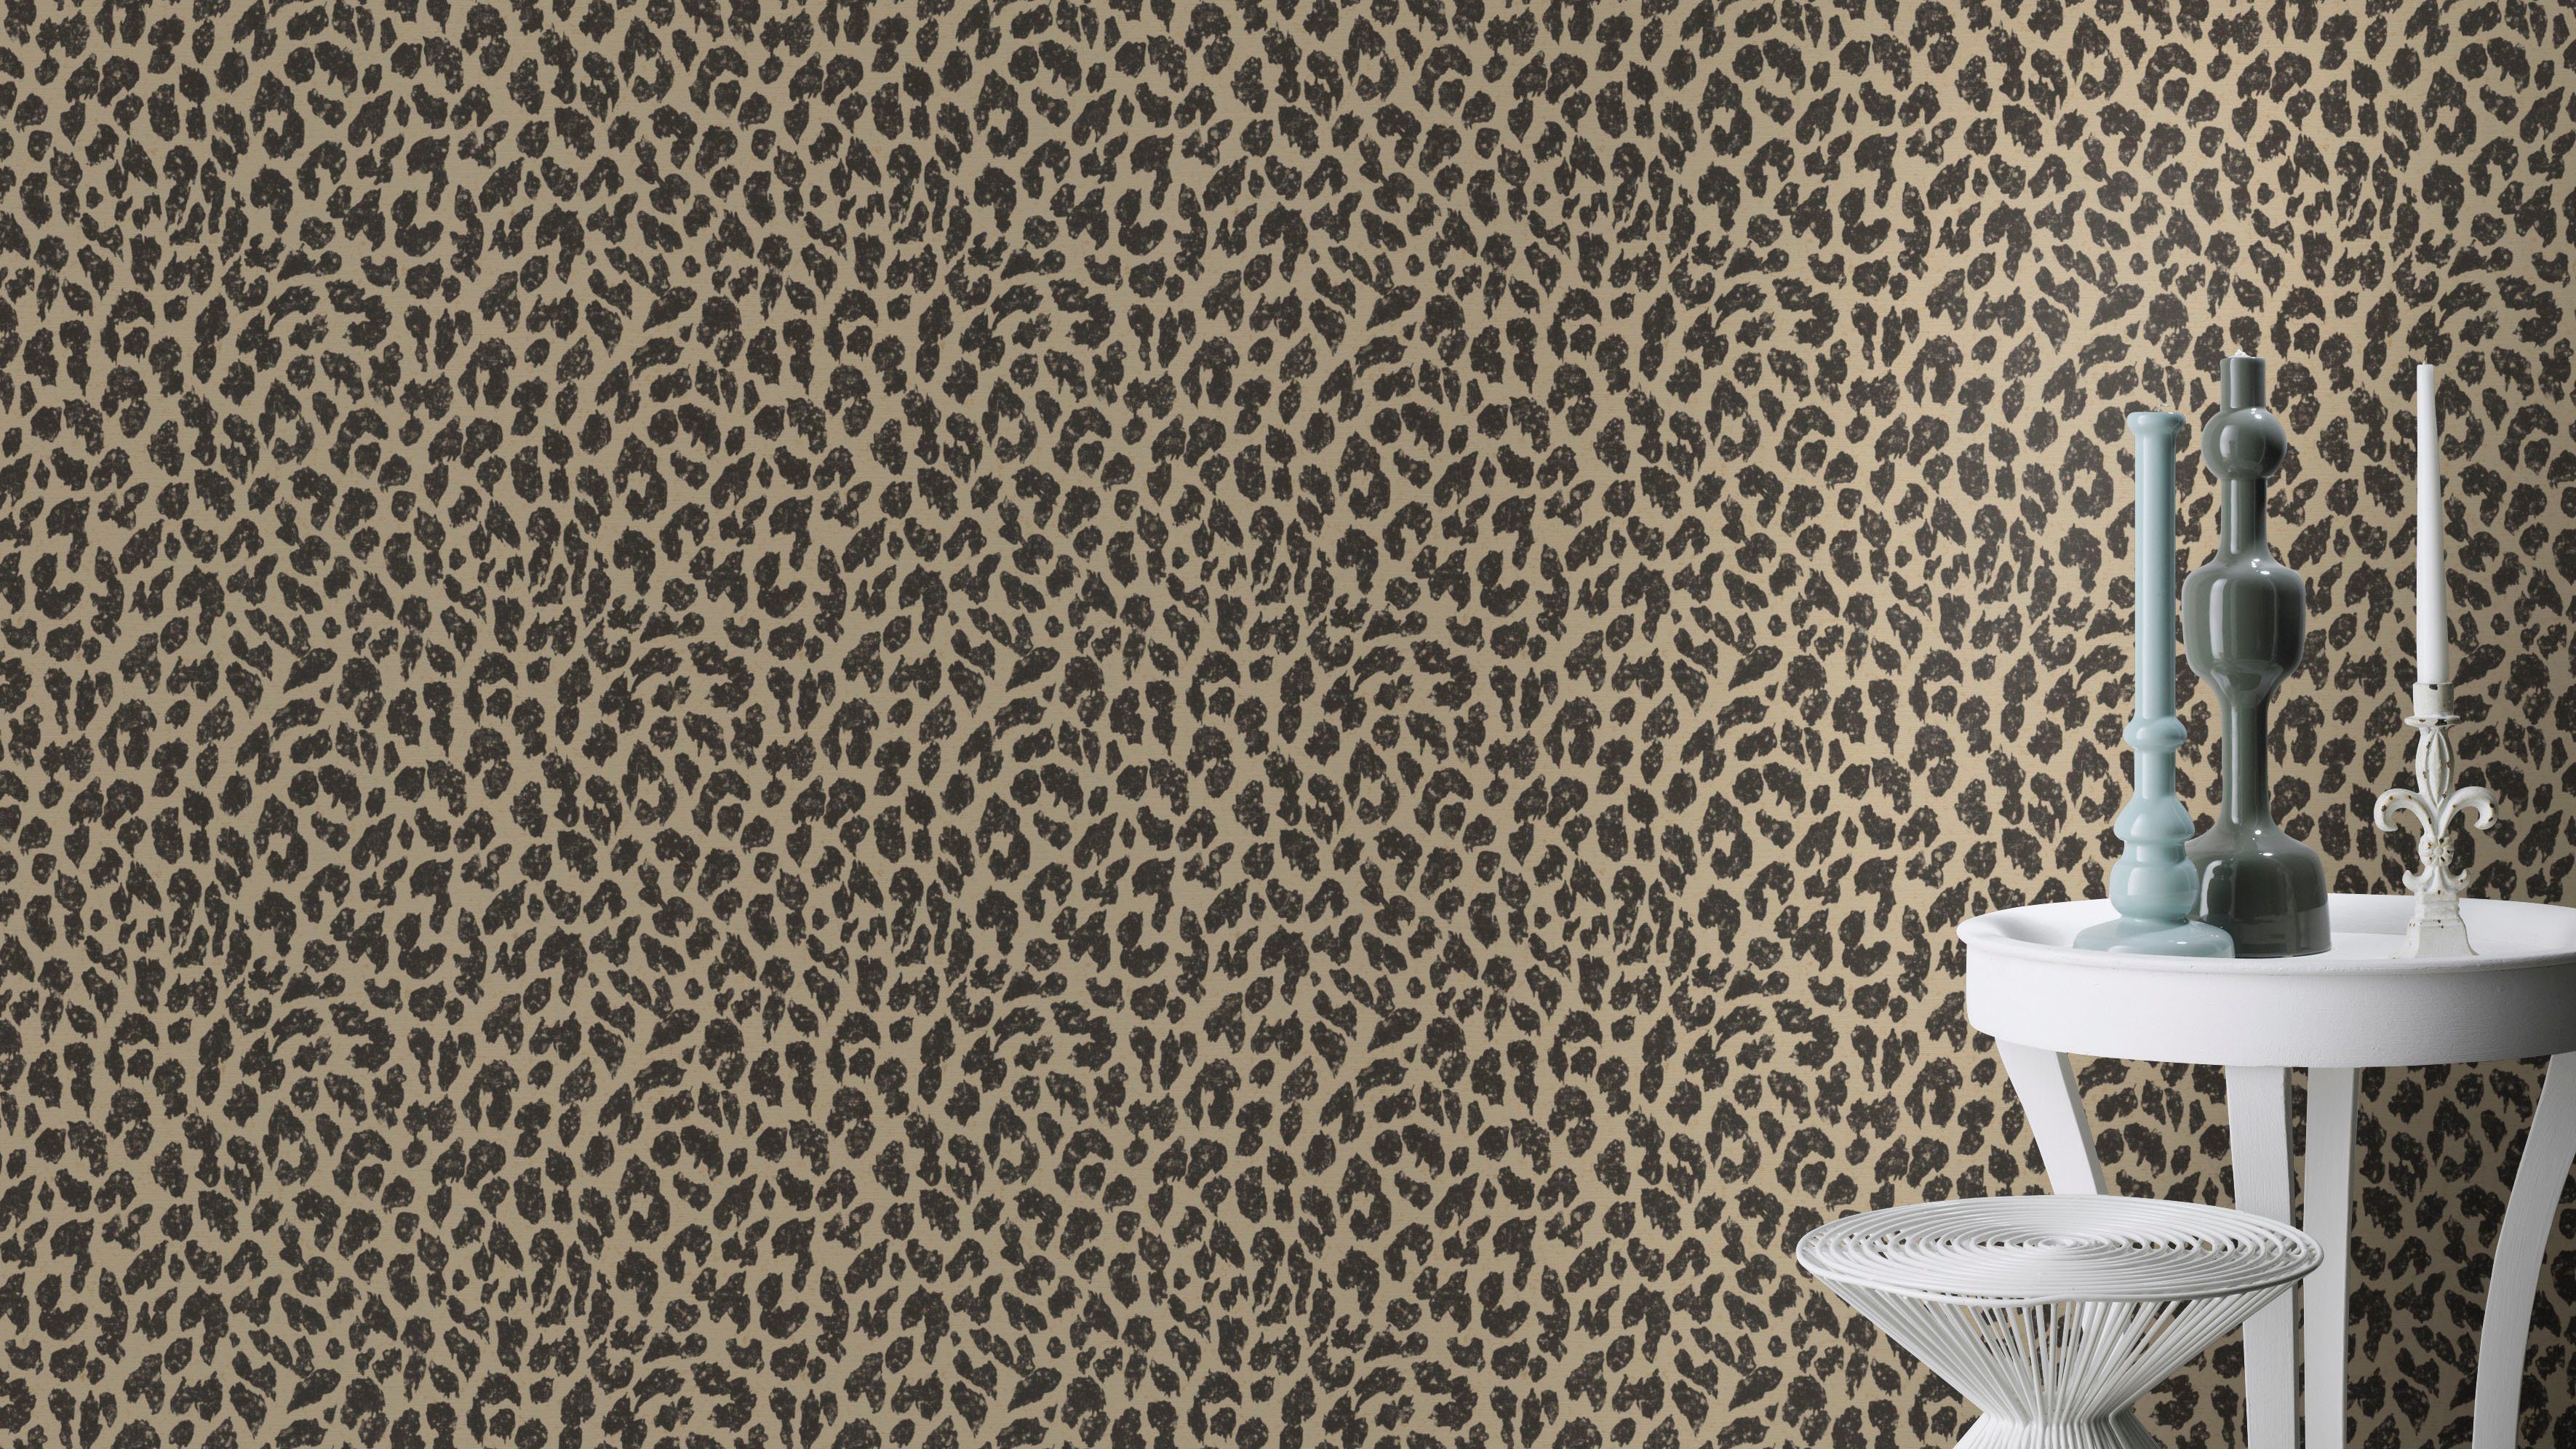 Vliestapete Leopardenmuster Matt Leicht Strukturiert Gold Schwarz FSC®  kaufen bei OBI